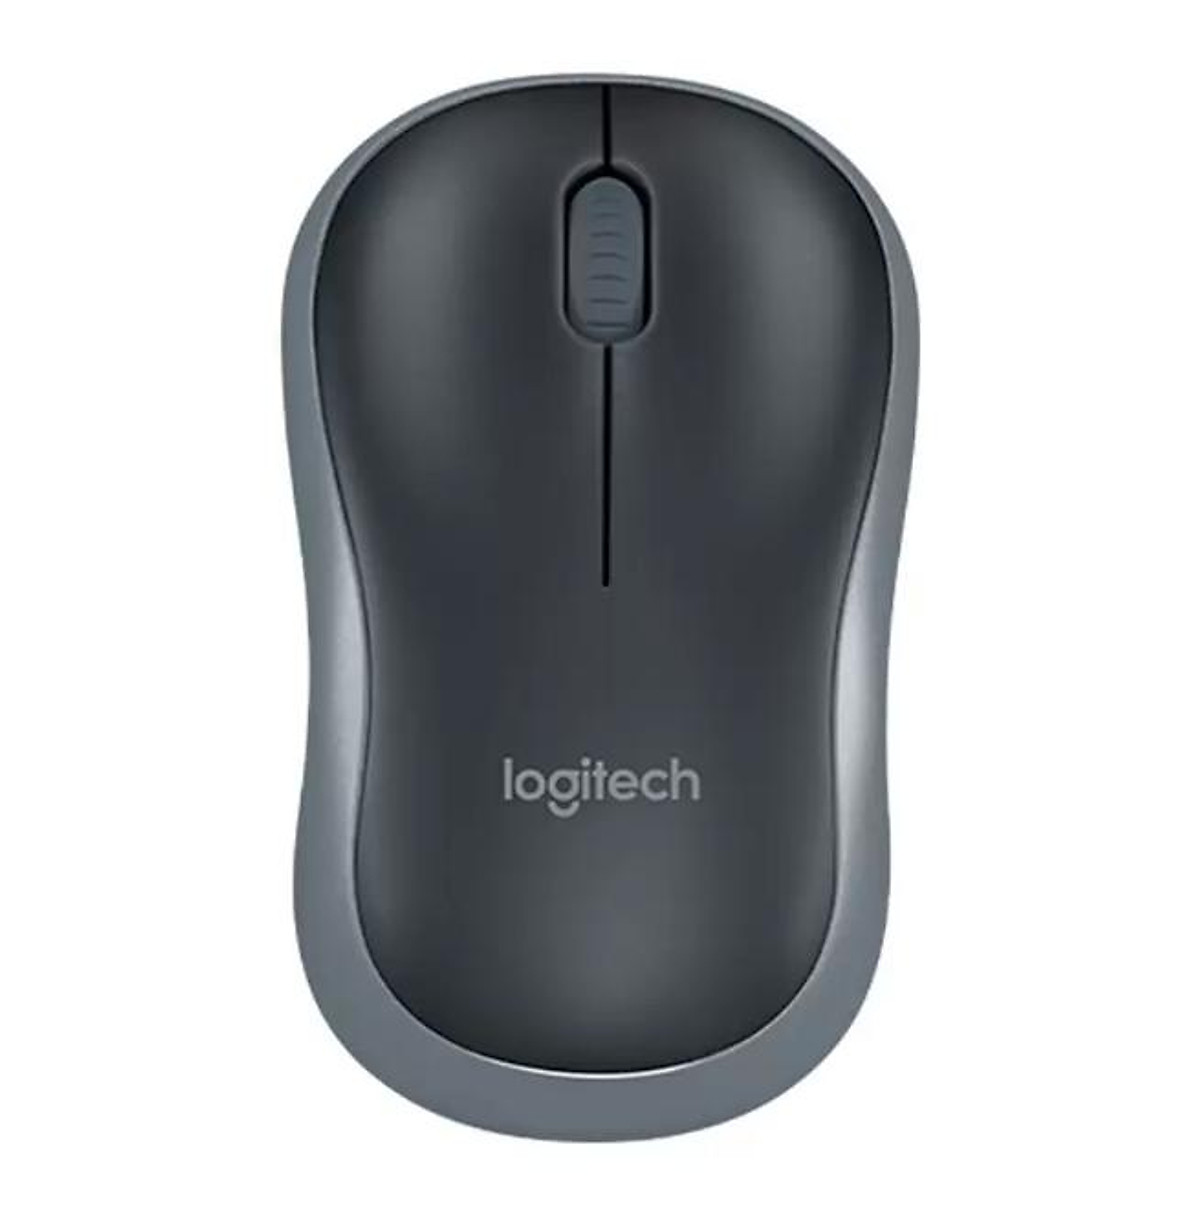 Chuột không dây Logitech B175 - USB 2.4Ghz, pin 1 năm